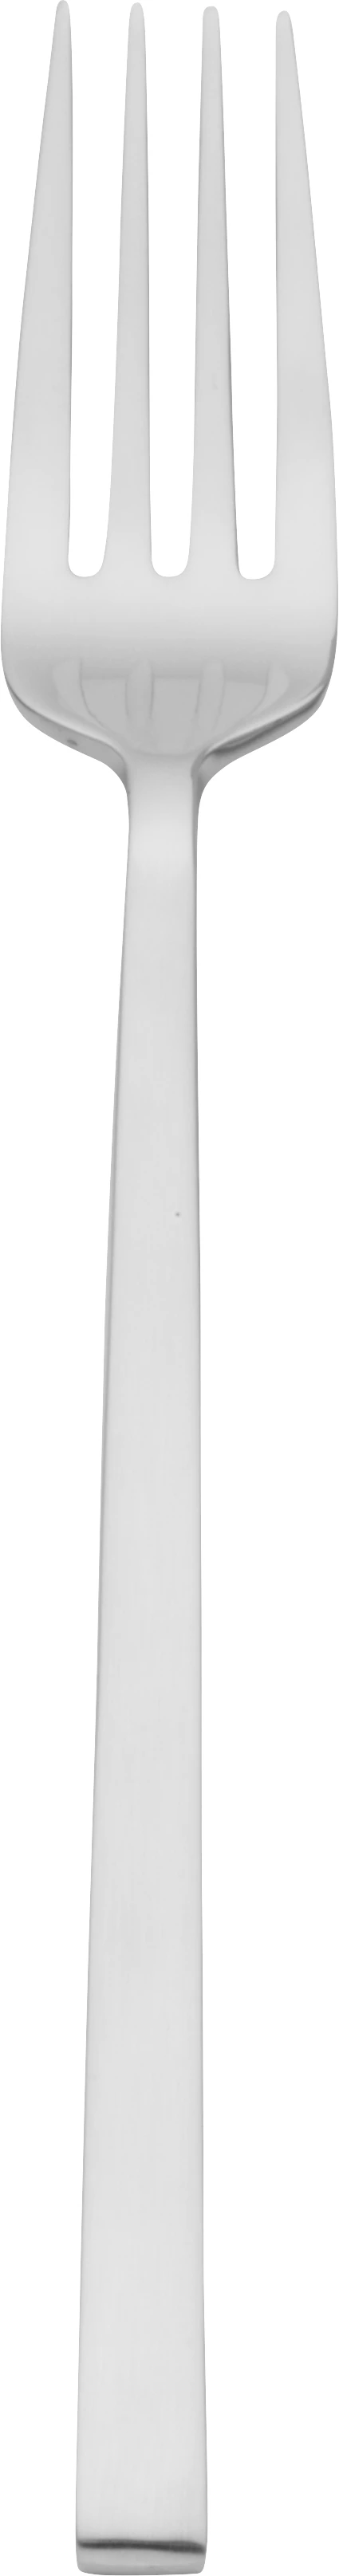 Estilo spisegaffel, 21 cm